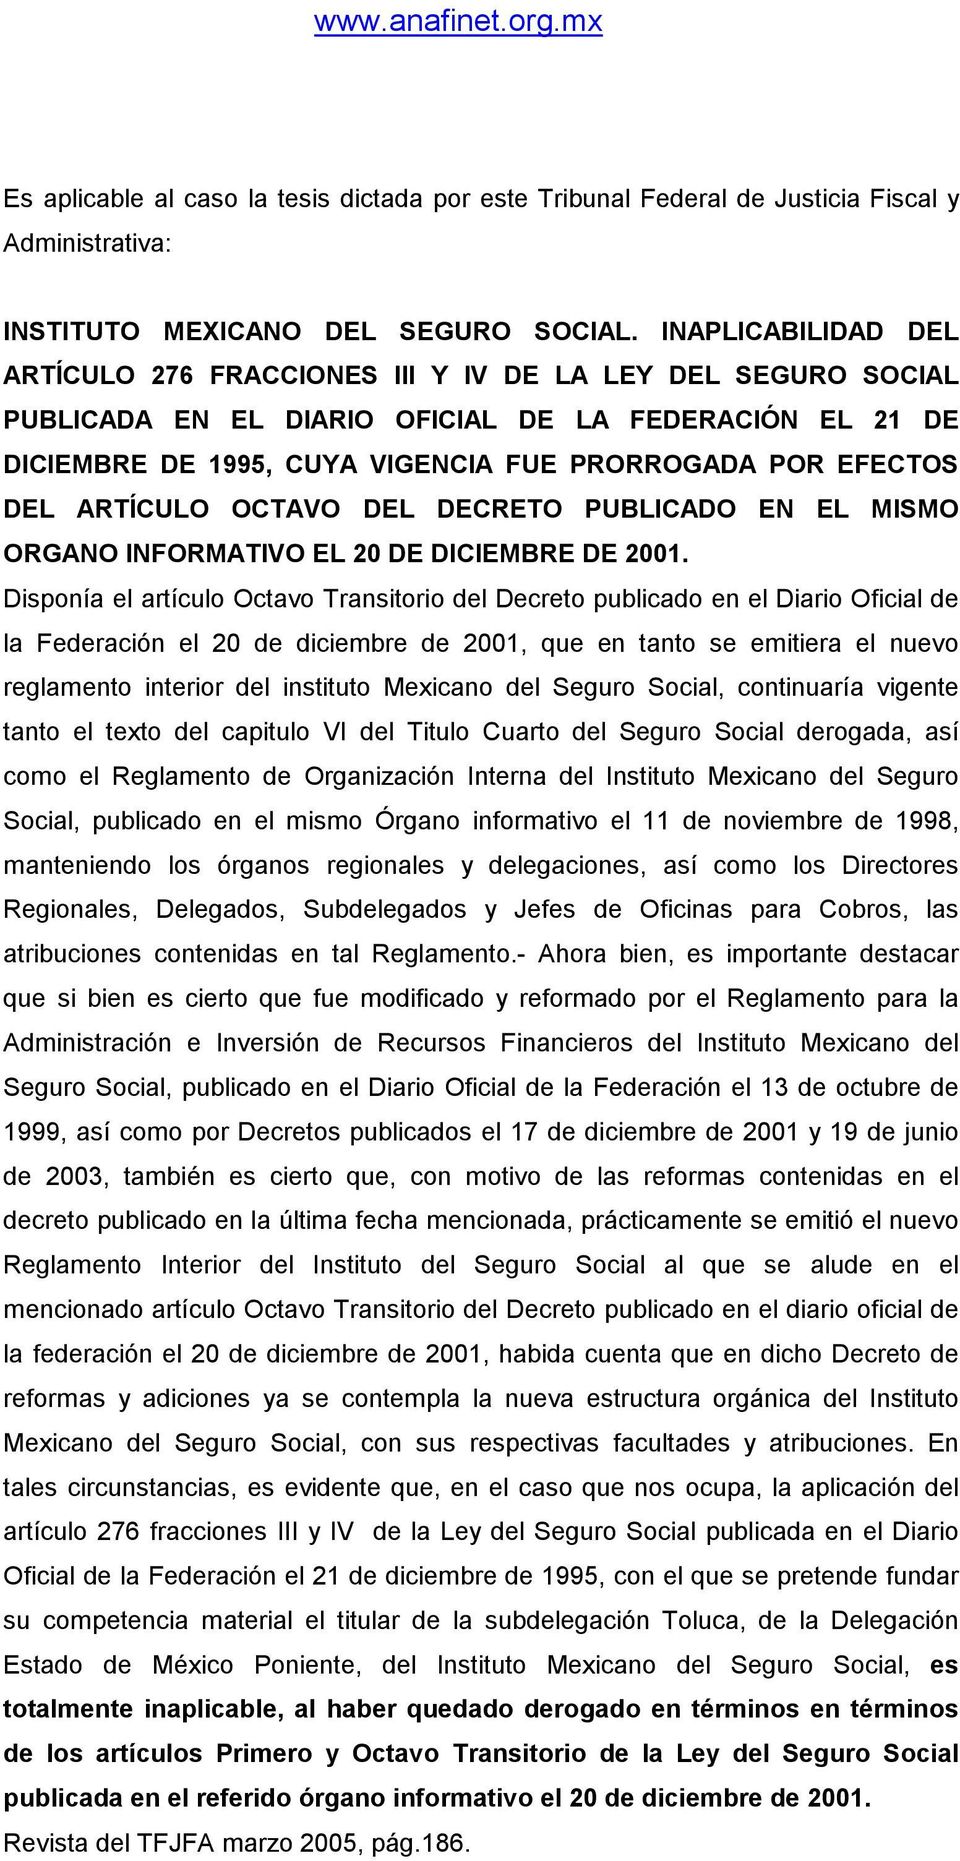 DEL ARTÍCULO OCTAVO DEL DECRETO PUBLICADO EN EL MISMO ORGANO INFORMATIVO EL 20 DE DICIEMBRE DE 2001.